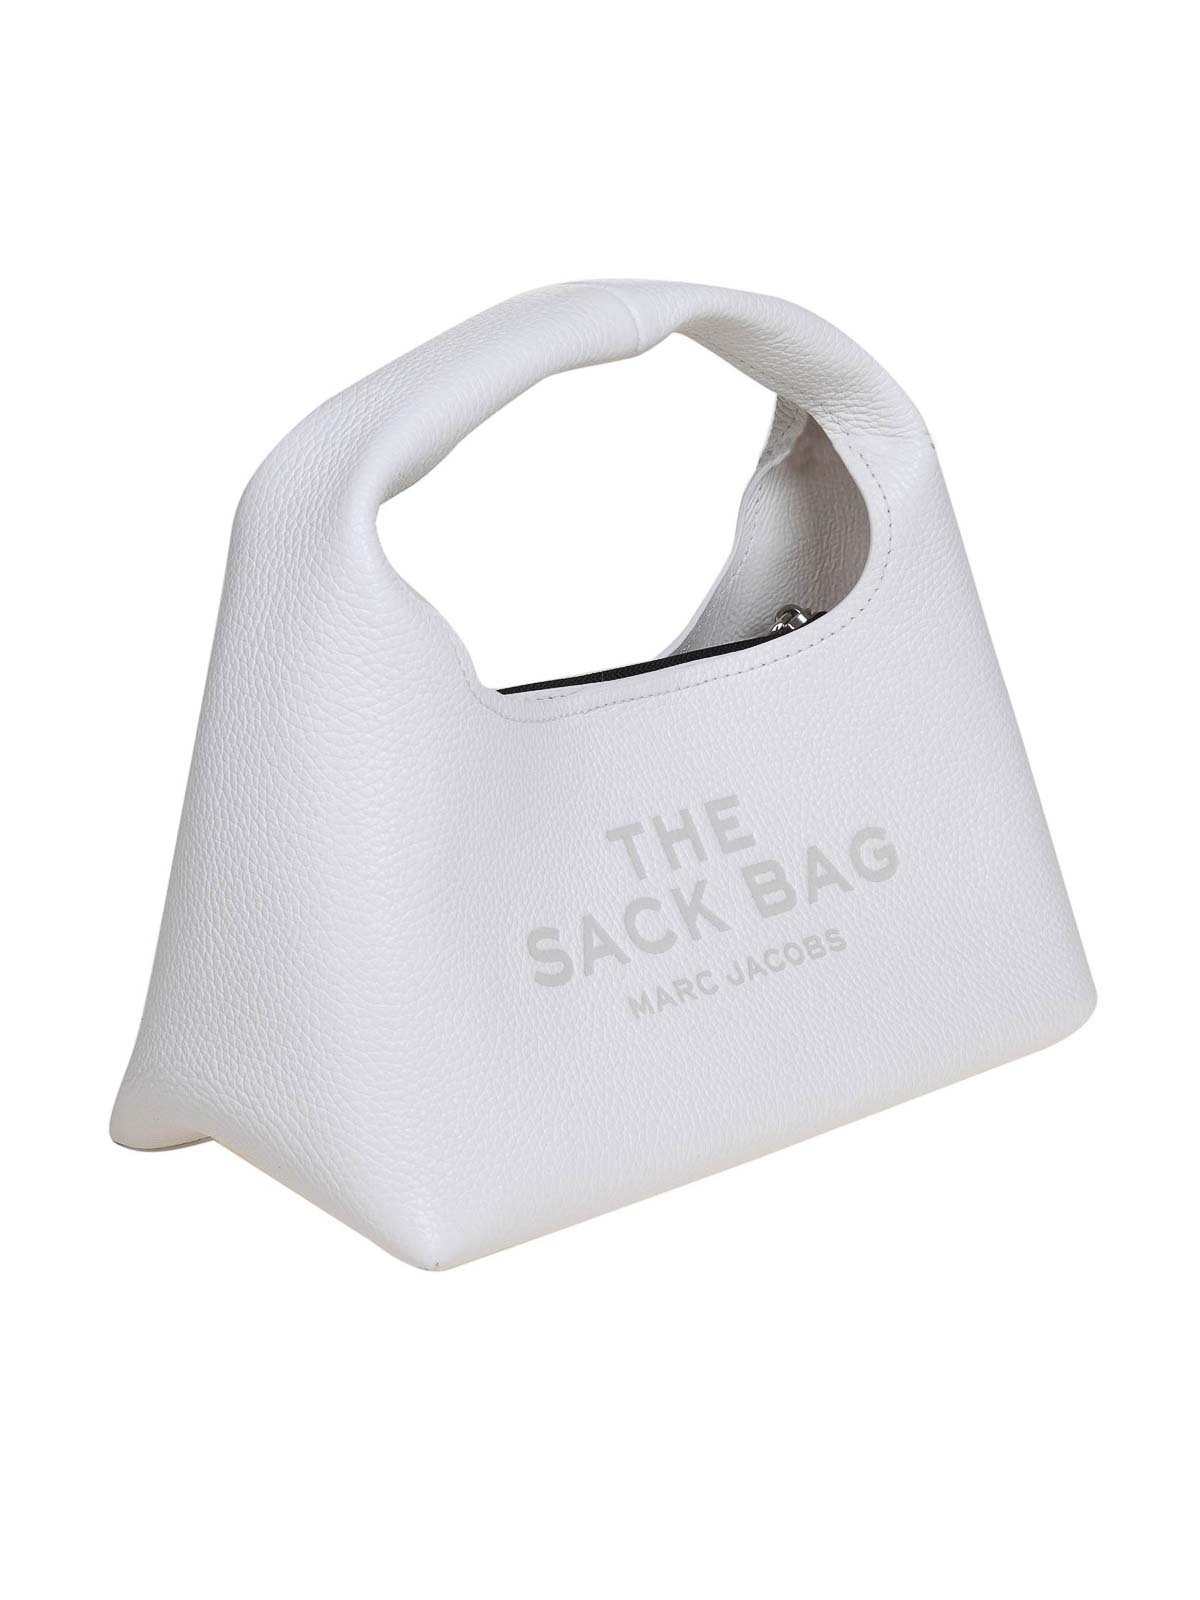 Marc Jacobs Mini The Sack Bag - Black